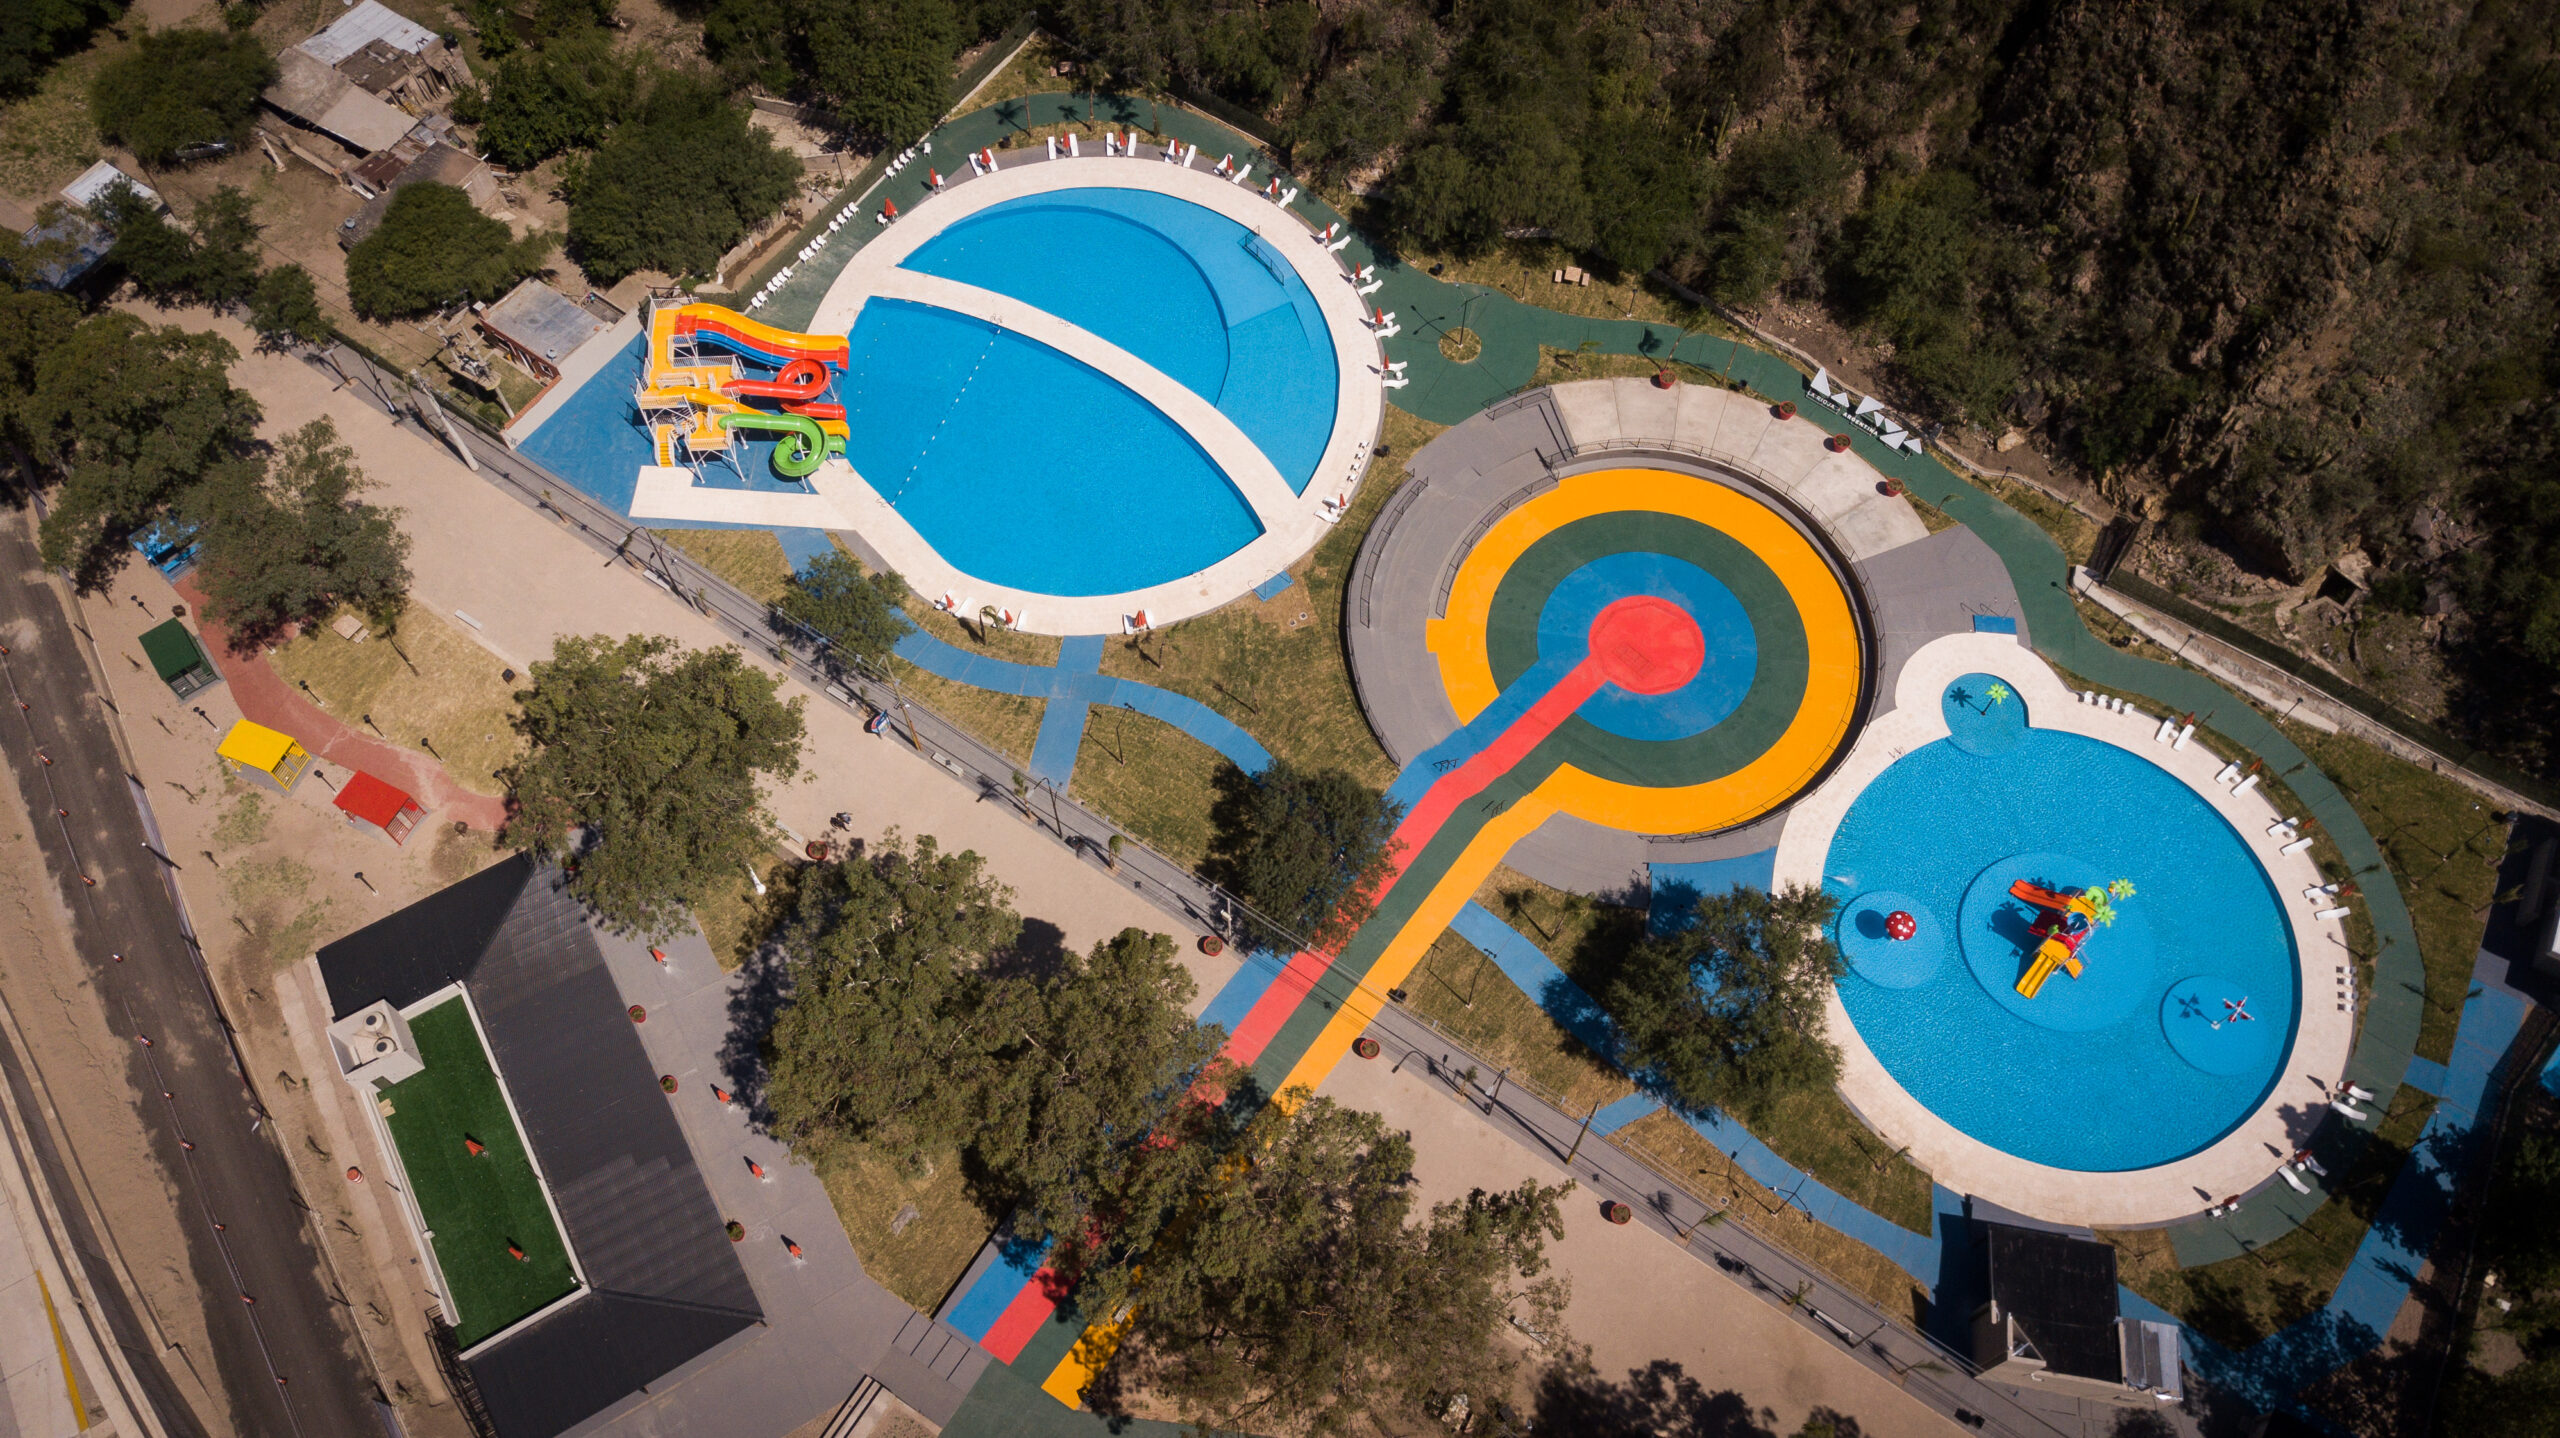 El Presidente inauguró un parque acuático y deportivo en La Rioja -  Termalismo